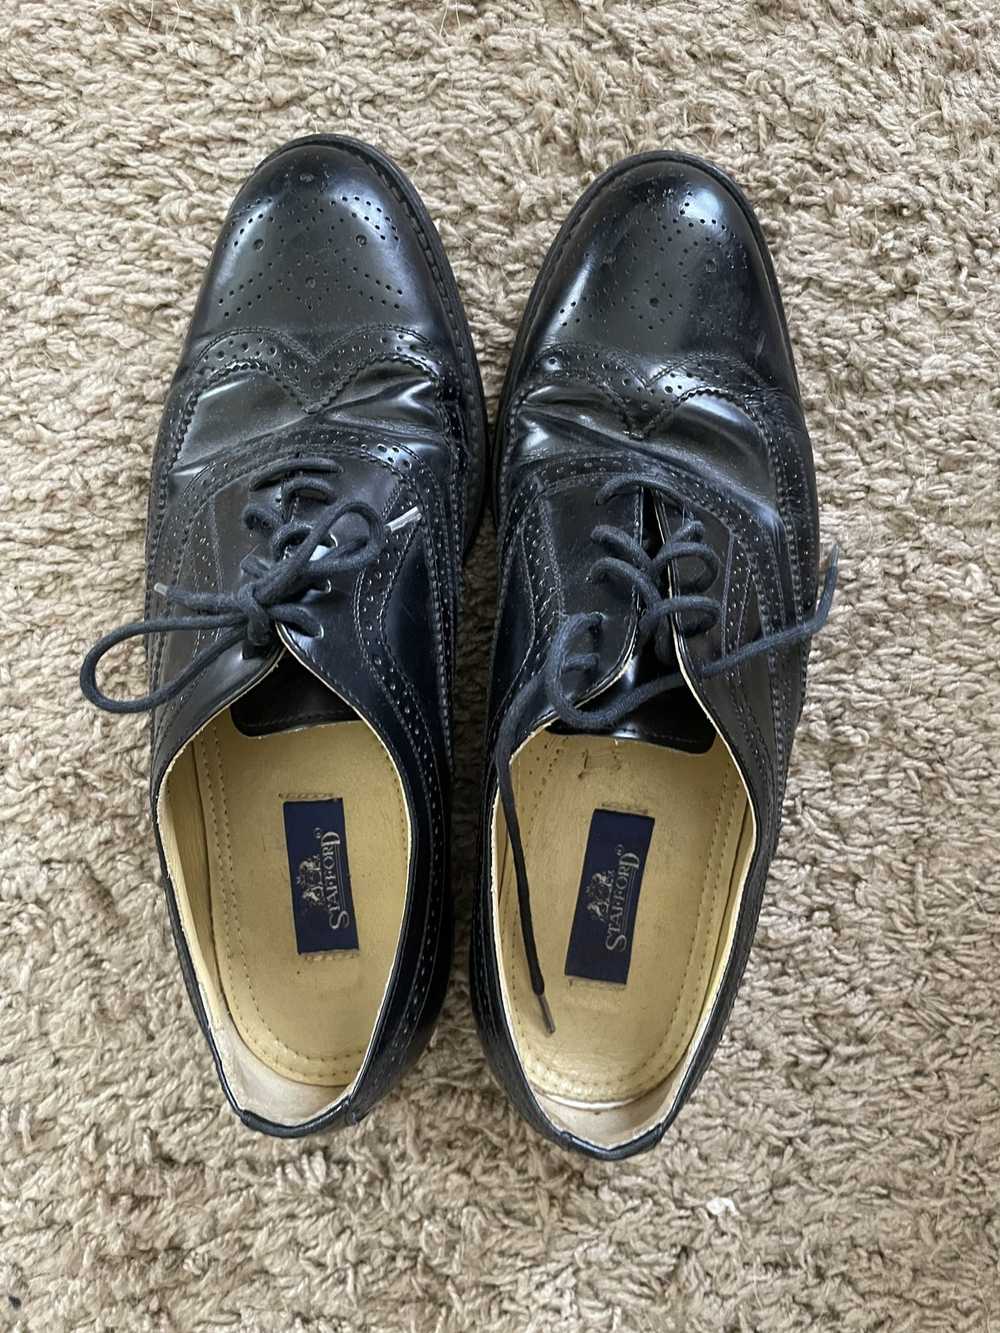 EUC Vintage Shoe Company Wingtip Derby Black Leather Dress Shoes Men's 11 M